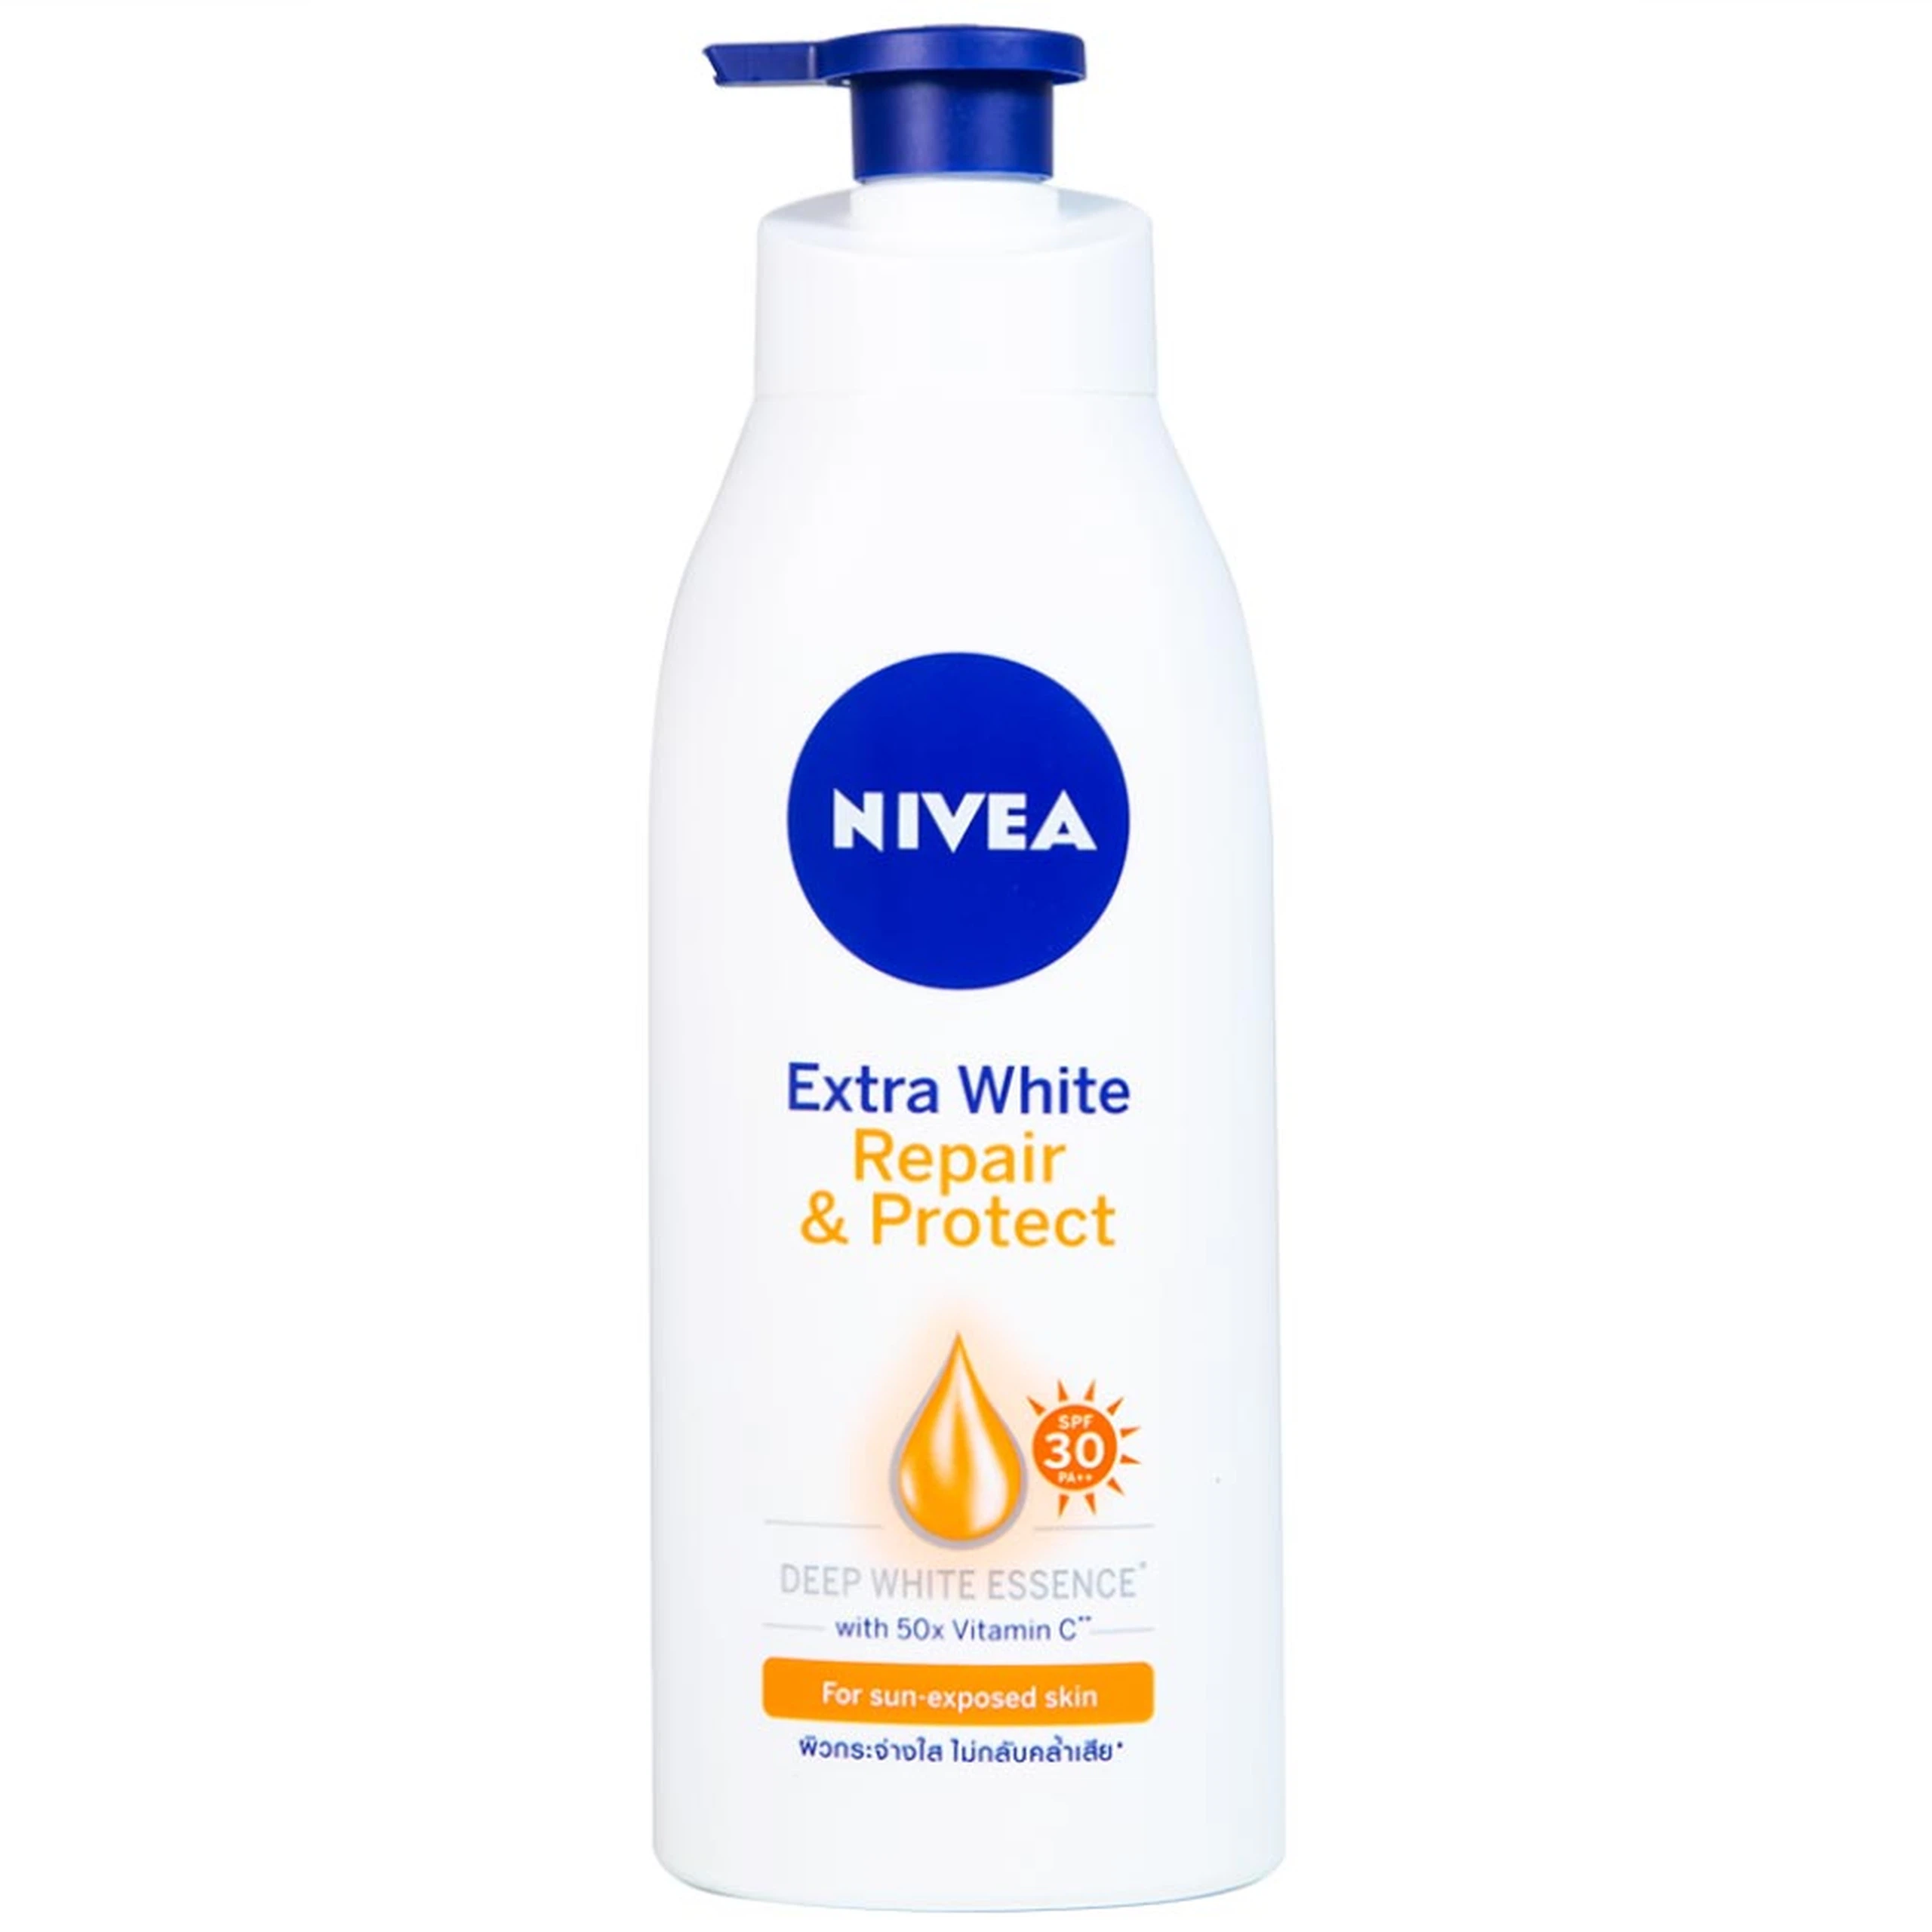 Sữa dưỡng thể dưỡng trắng Nivea Extra White Repair & Protect SPF30 giúp phục hồi và chống nắng (350ml)